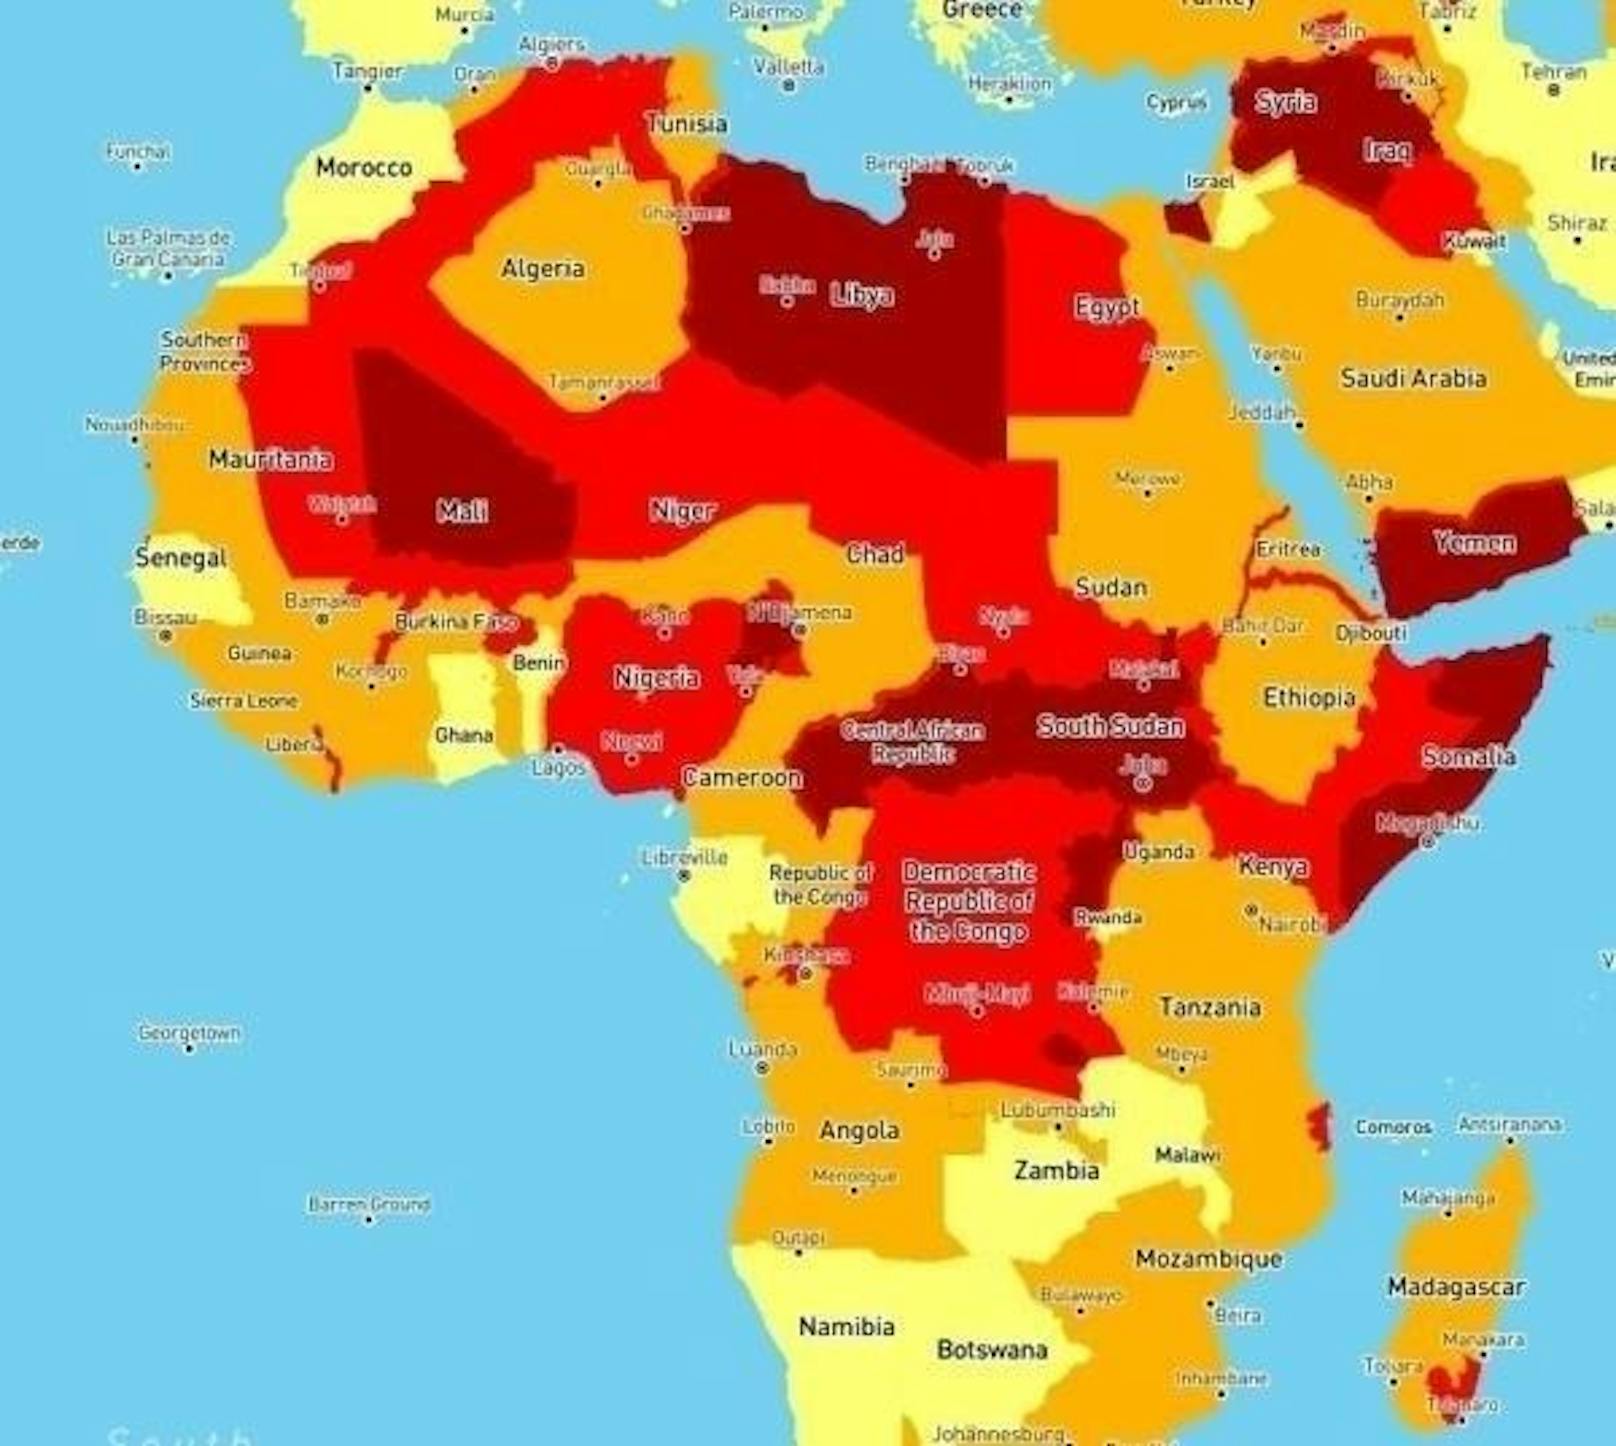 Dunkelrot steht für ein sehr hohes Risiko. Ernsthafte Gewalttaten durch bewaffnete Gruppen stellen für Reisende eine ernstzunehmende Gefahr dar. So gelten Länder wie Mali, Libyen, Zentralafrika und Somalia als gefährlich.